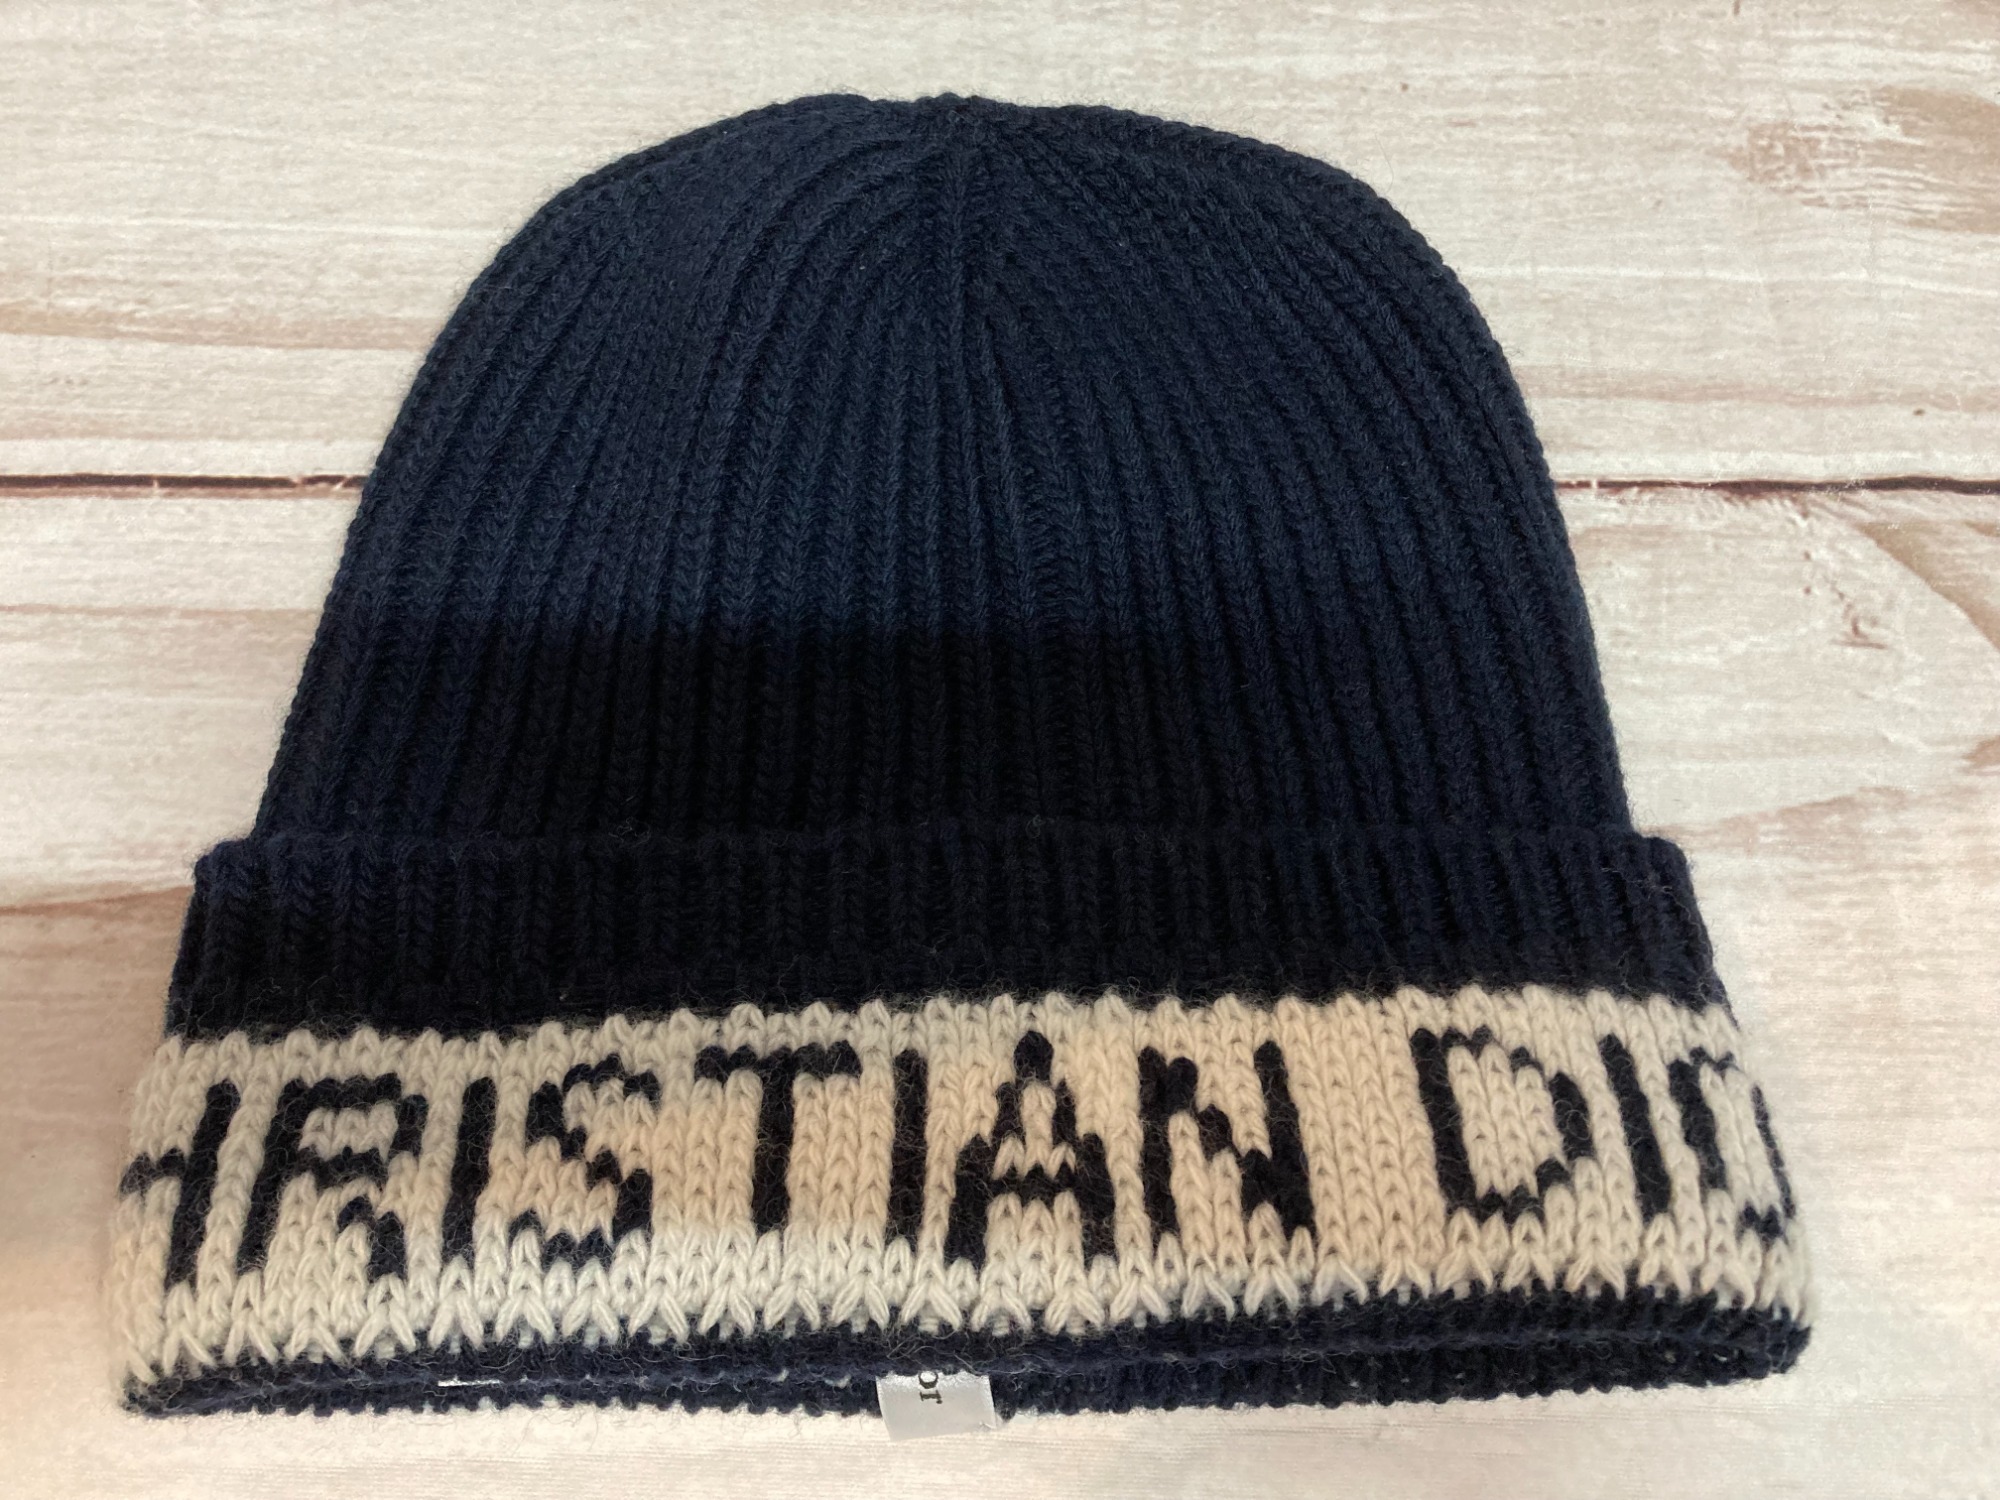 ChristianDior（クリスチャンディオール）のニット帽が入荷しました